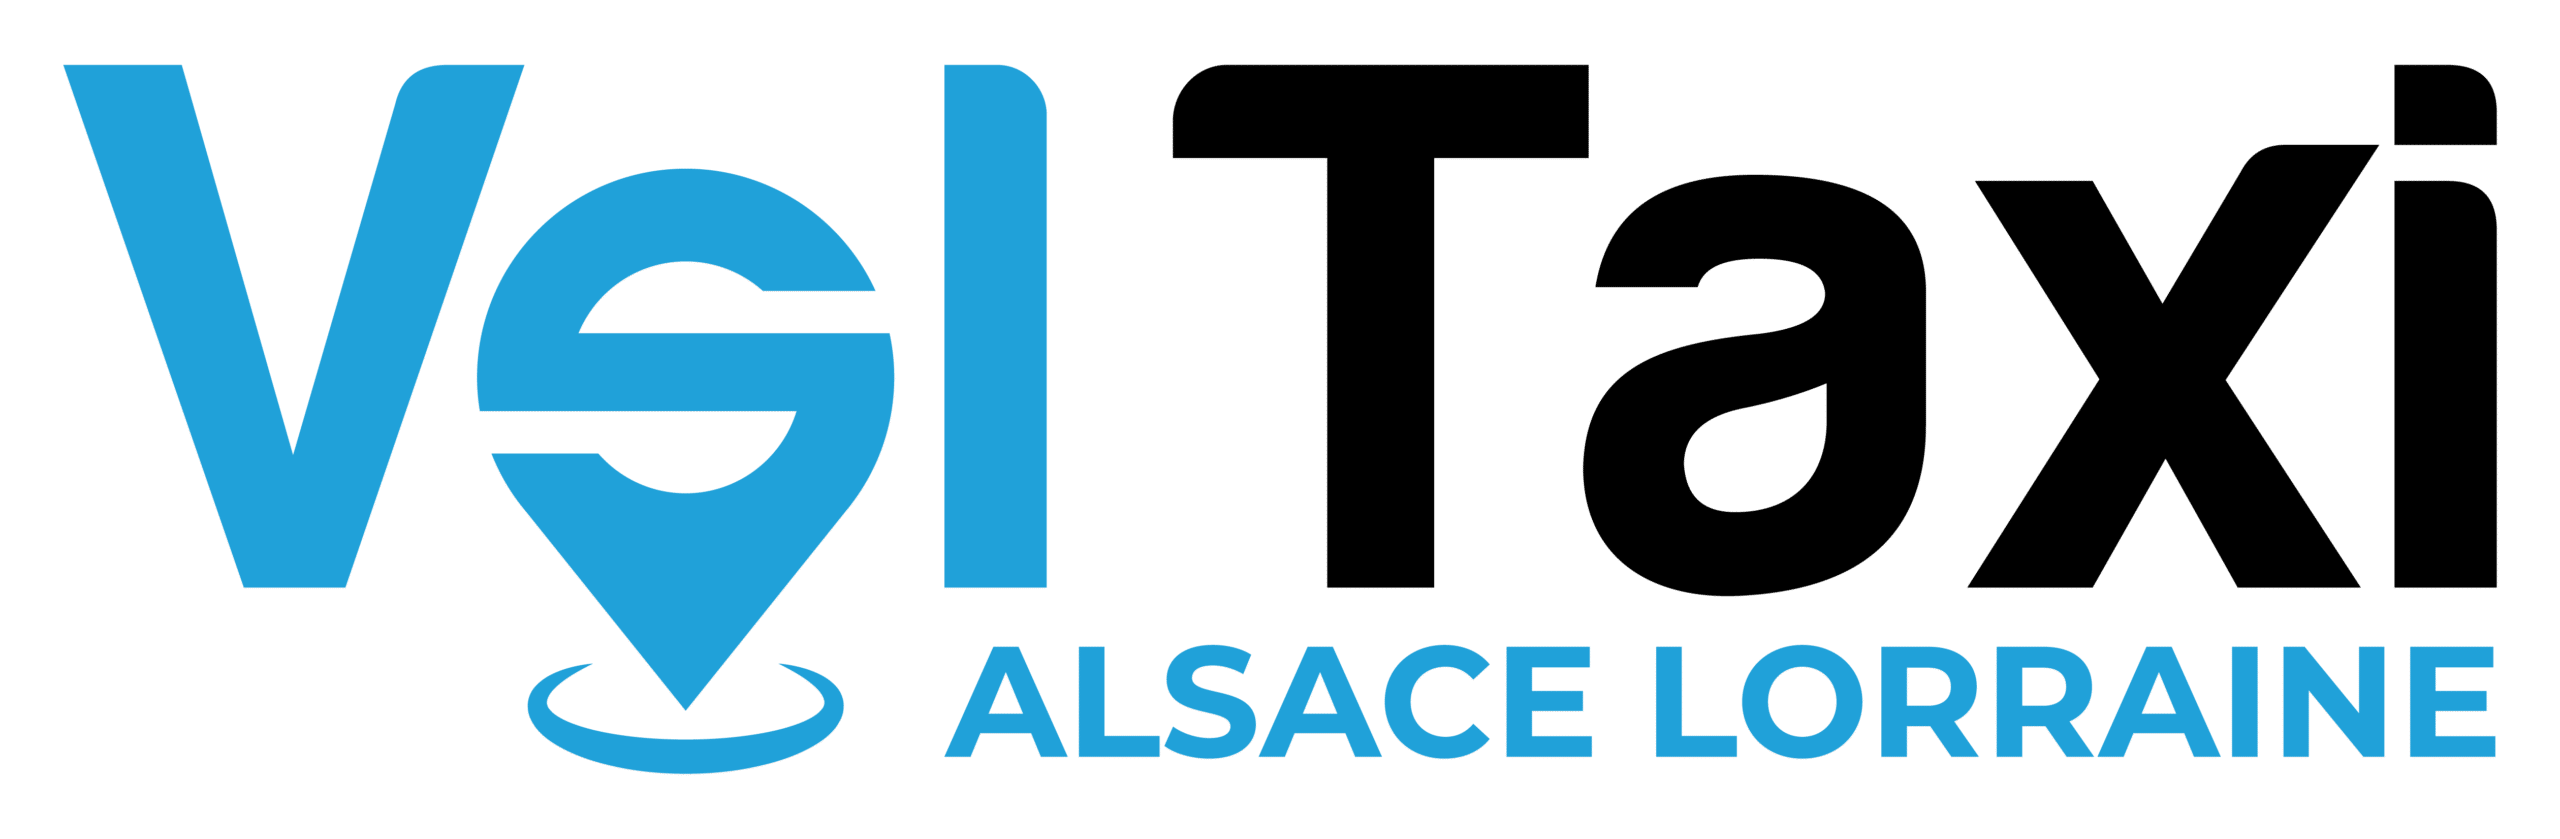 VSL Taxi Alsace-Lorraine